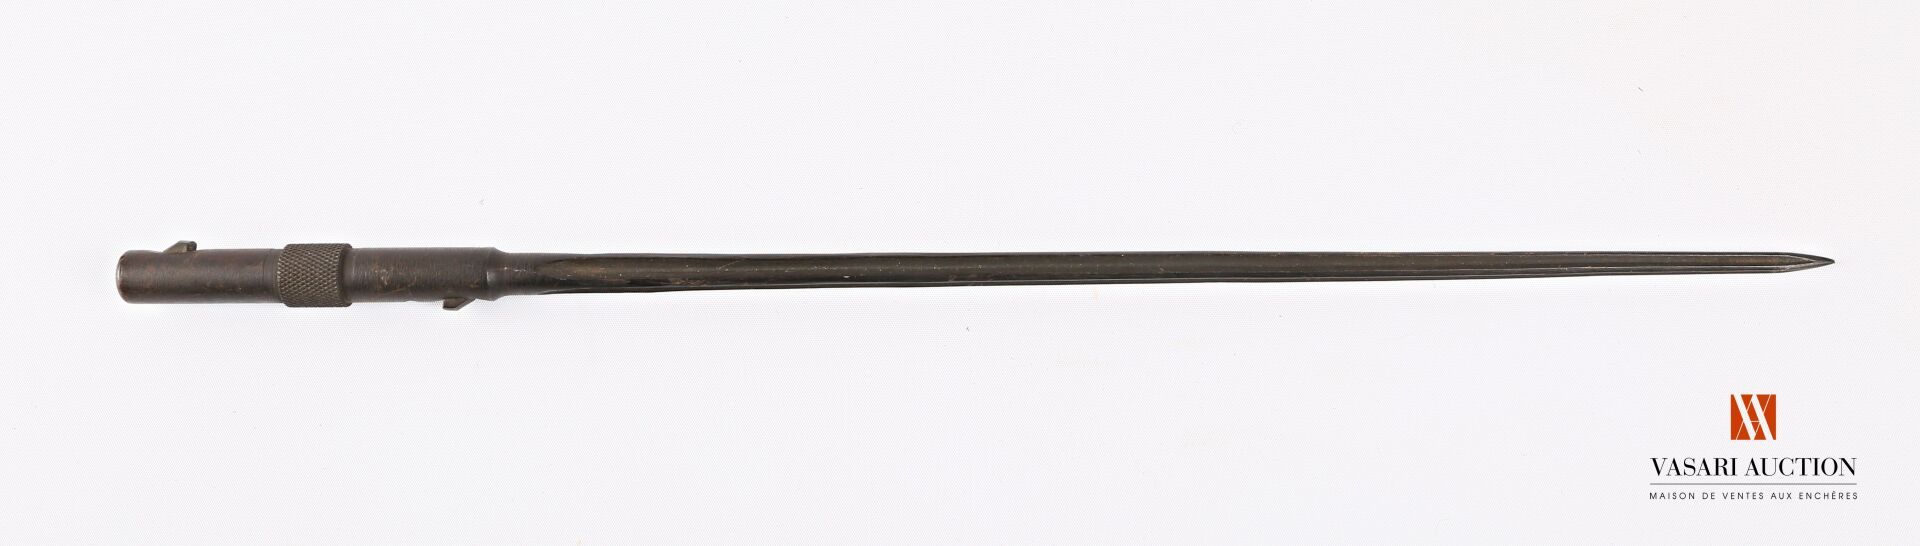 Null 用于MAS 36步枪的刺刀，十字形刀身33.8厘米，扭索状手柄，盖章，TBE，TL43.2厘米，法国二战时期。

D类